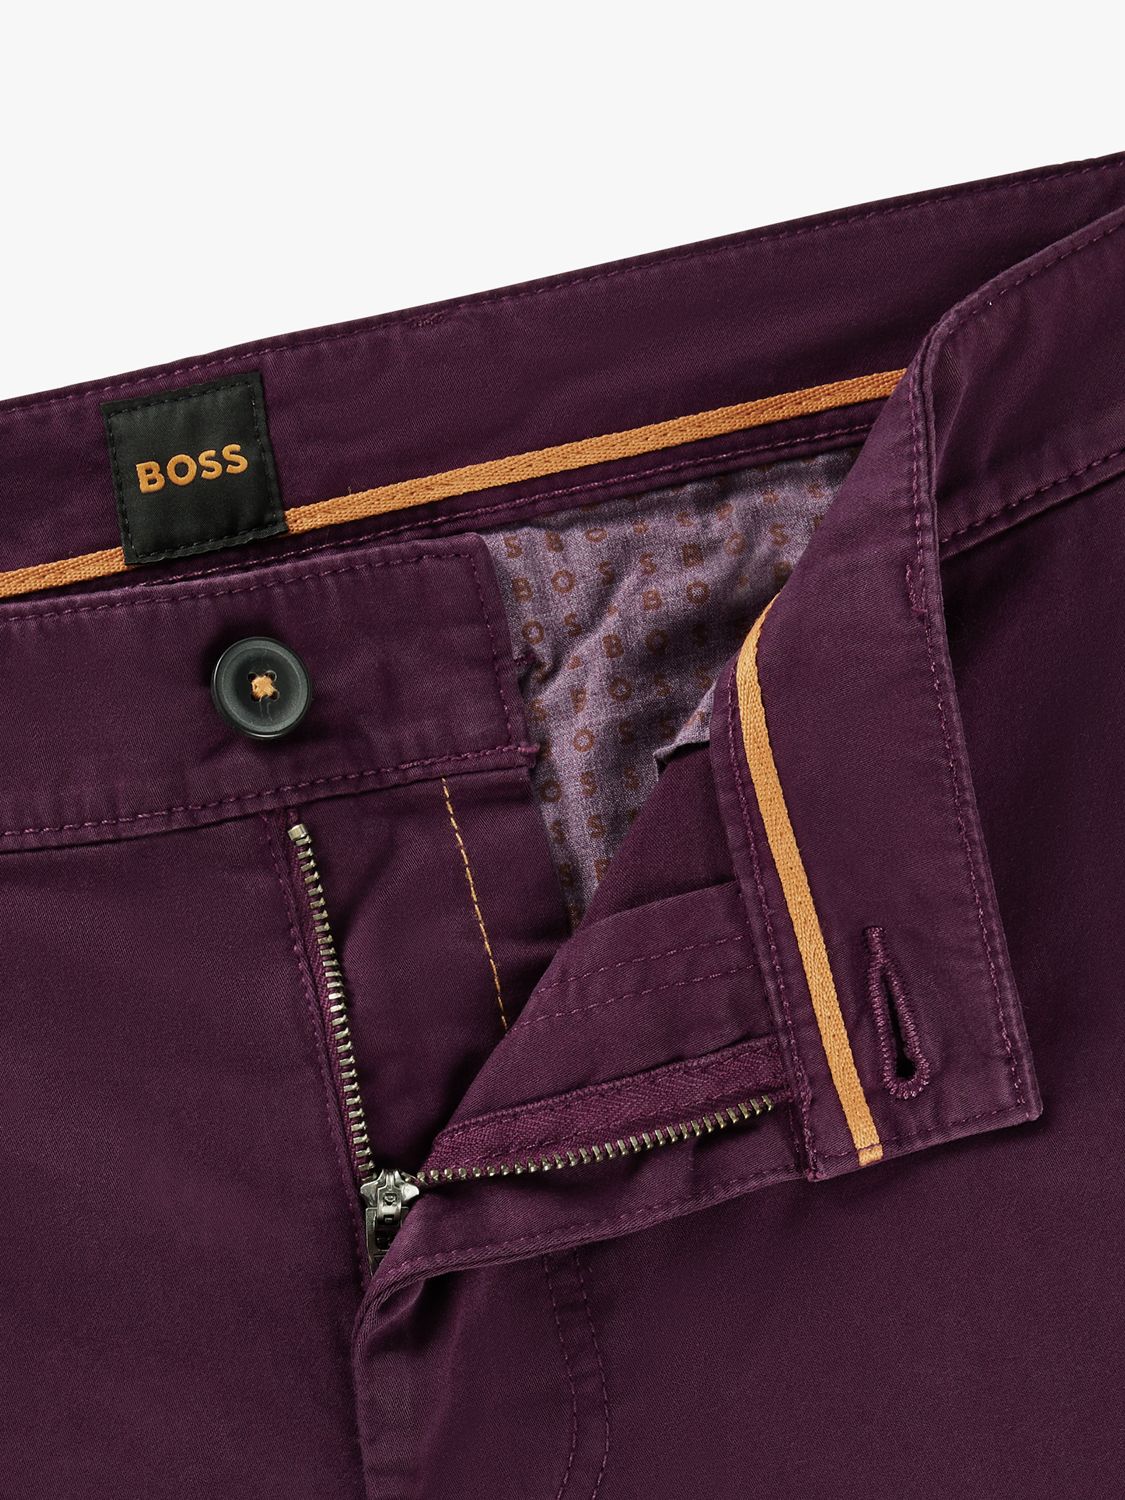 BOSS Cotton Tapered Chinos, Medium Purple, 36R